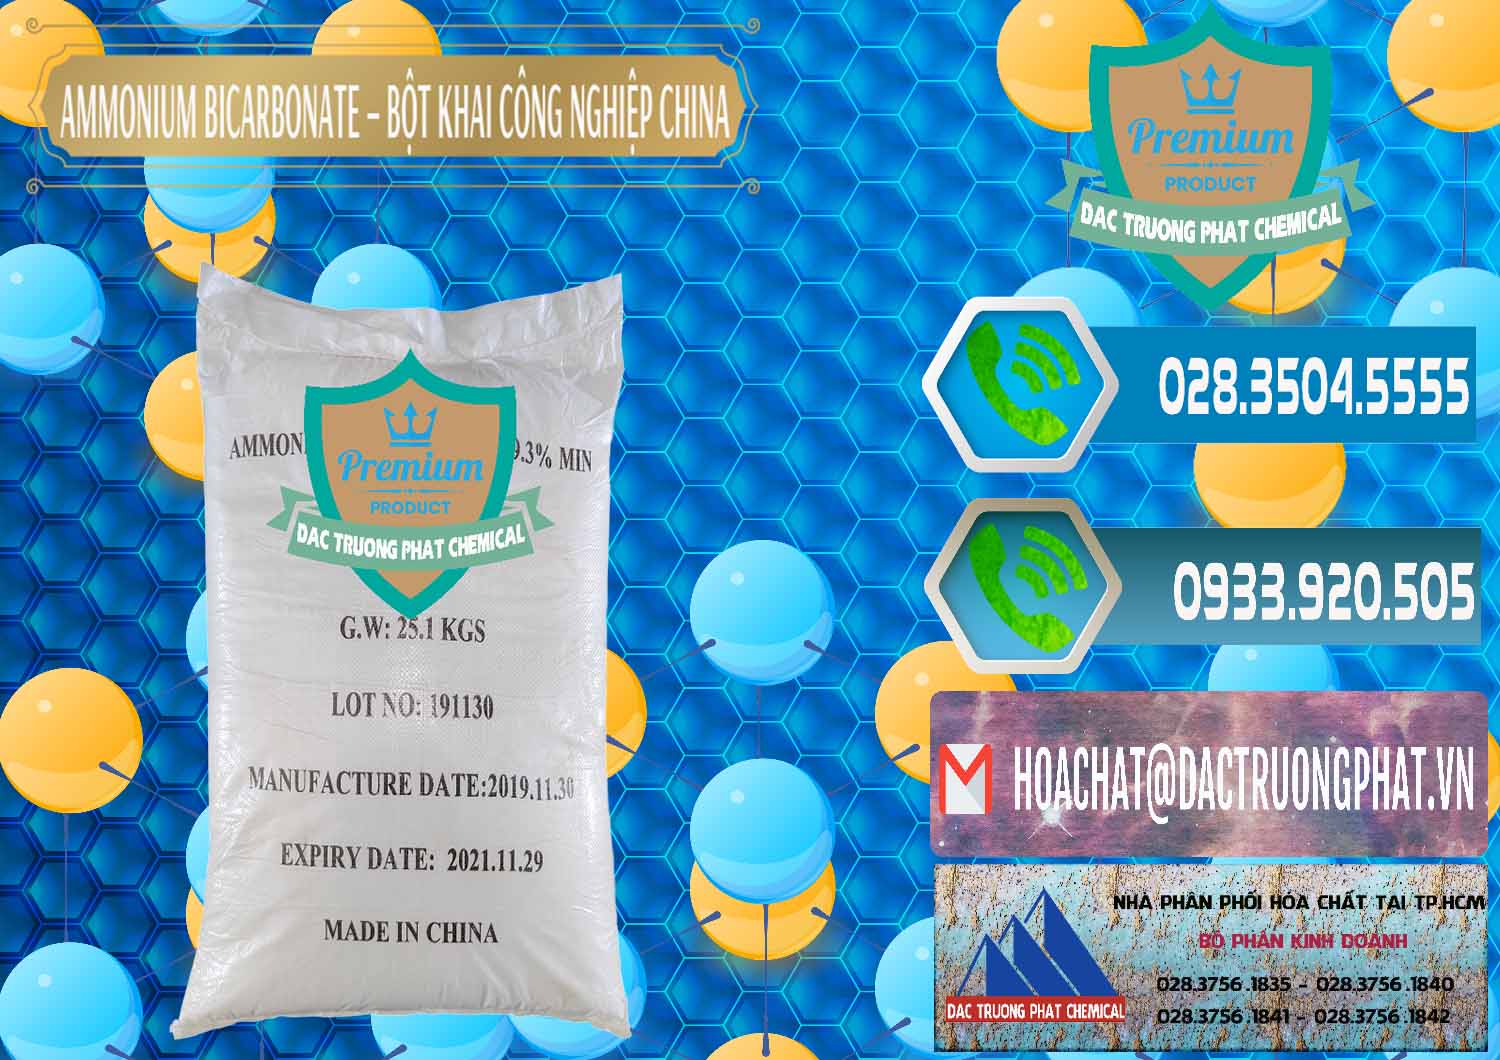 Chuyên cung cấp ( bán ) Ammonium Bicarbonate – Bột Khai Công Nghiệp Trung Quốc China - 0020 - Cty bán & cung cấp hóa chất tại TP.HCM - congtyhoachat.net